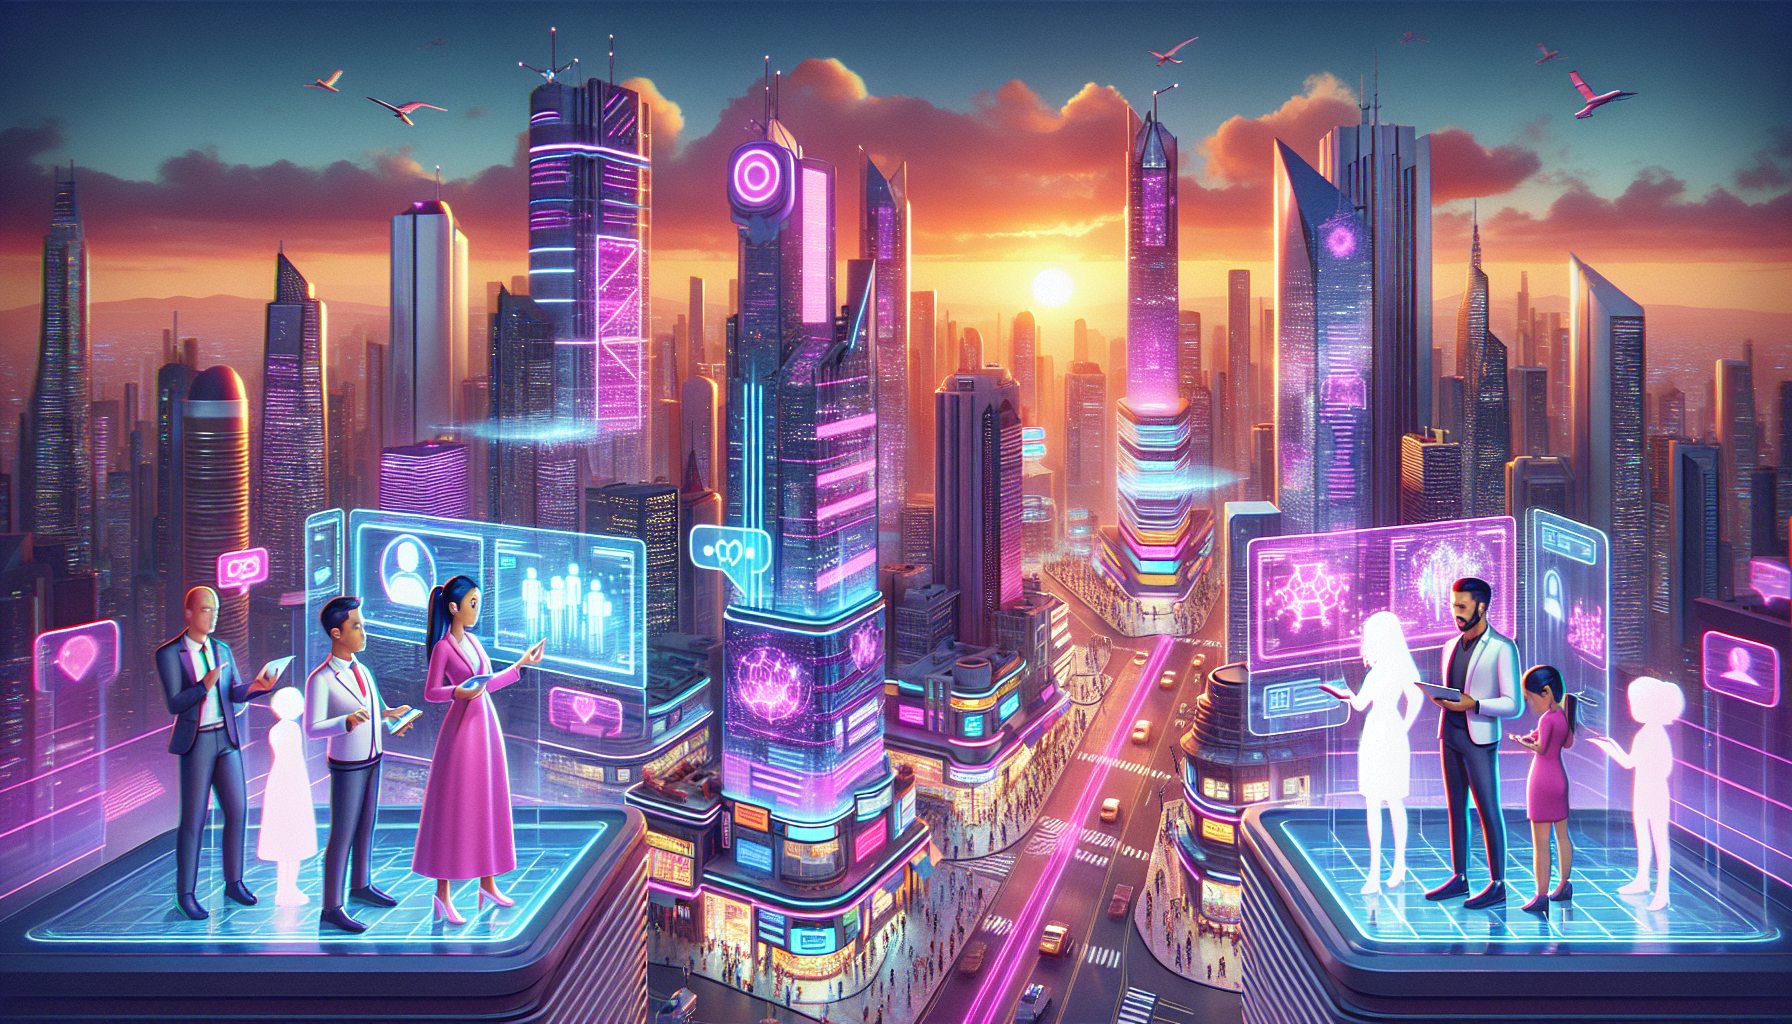 entrepreneurs dessins animes interagissant avec IA holographique dans entreprise urbaine futuriste 8K.jpeg